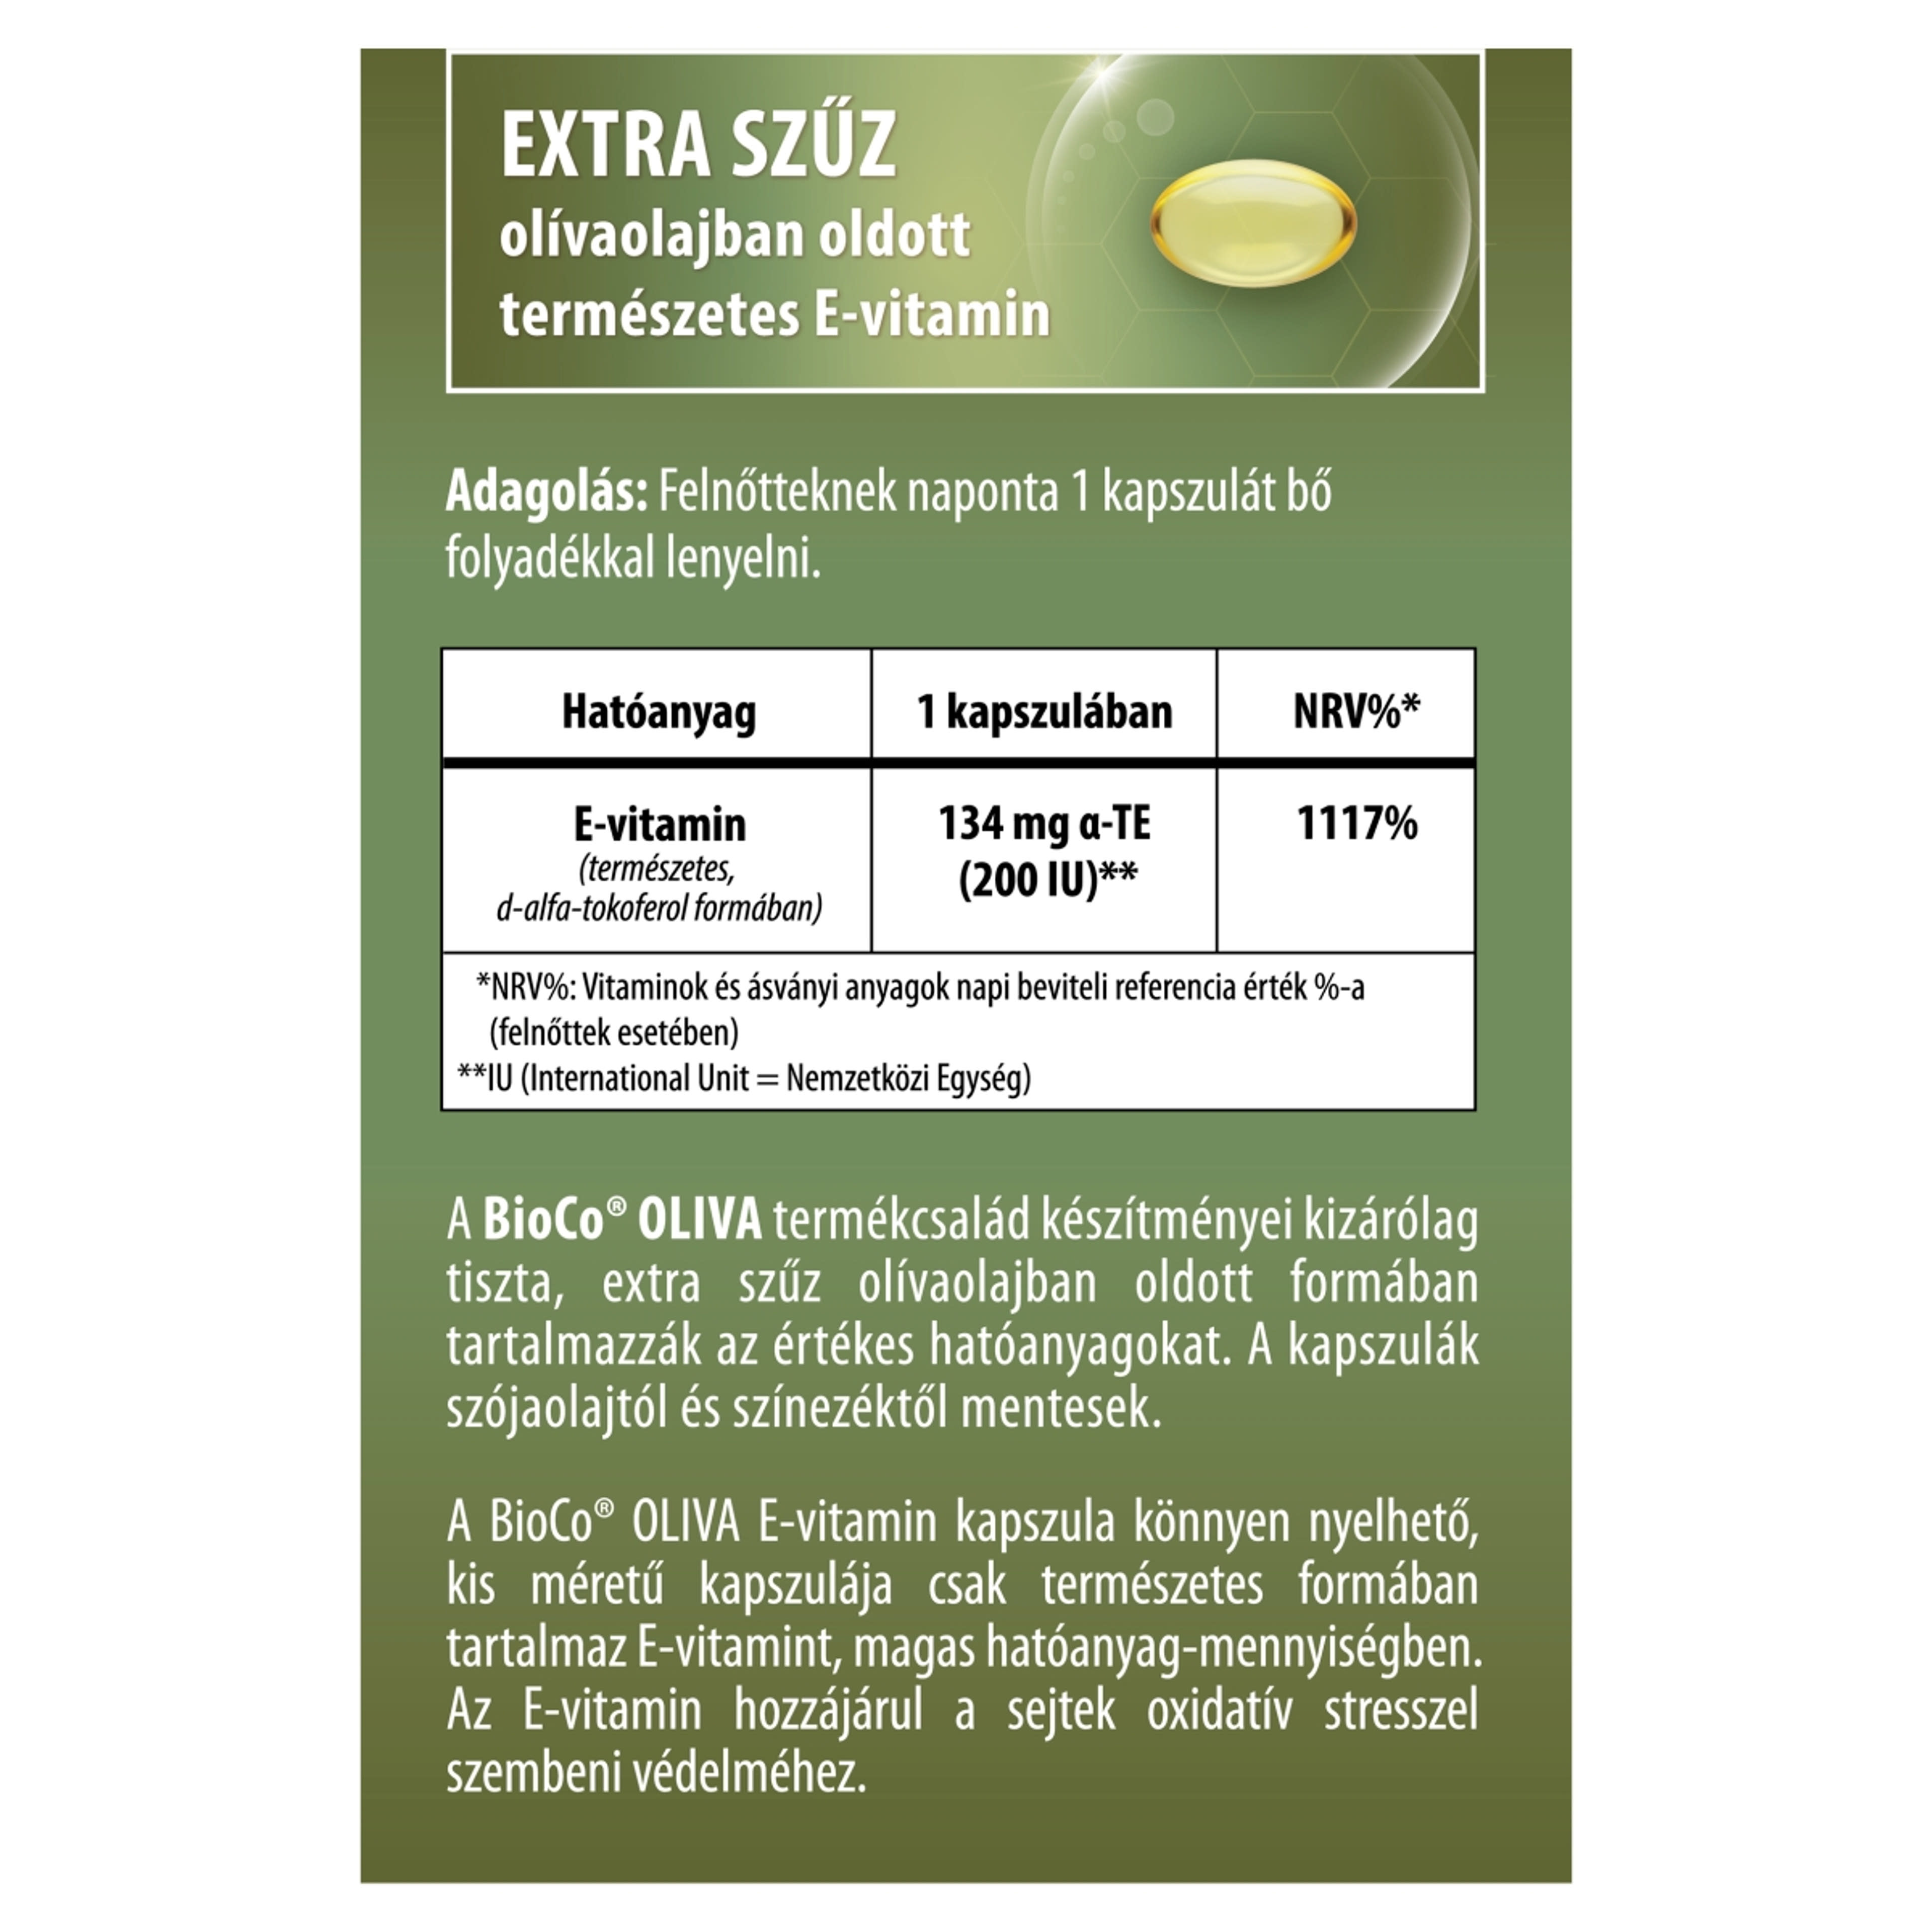 BioCo Oliva Természetes E-vitamin 200 IU étrend-kiegészítő lágyzselatin kapszula - 60 db-2